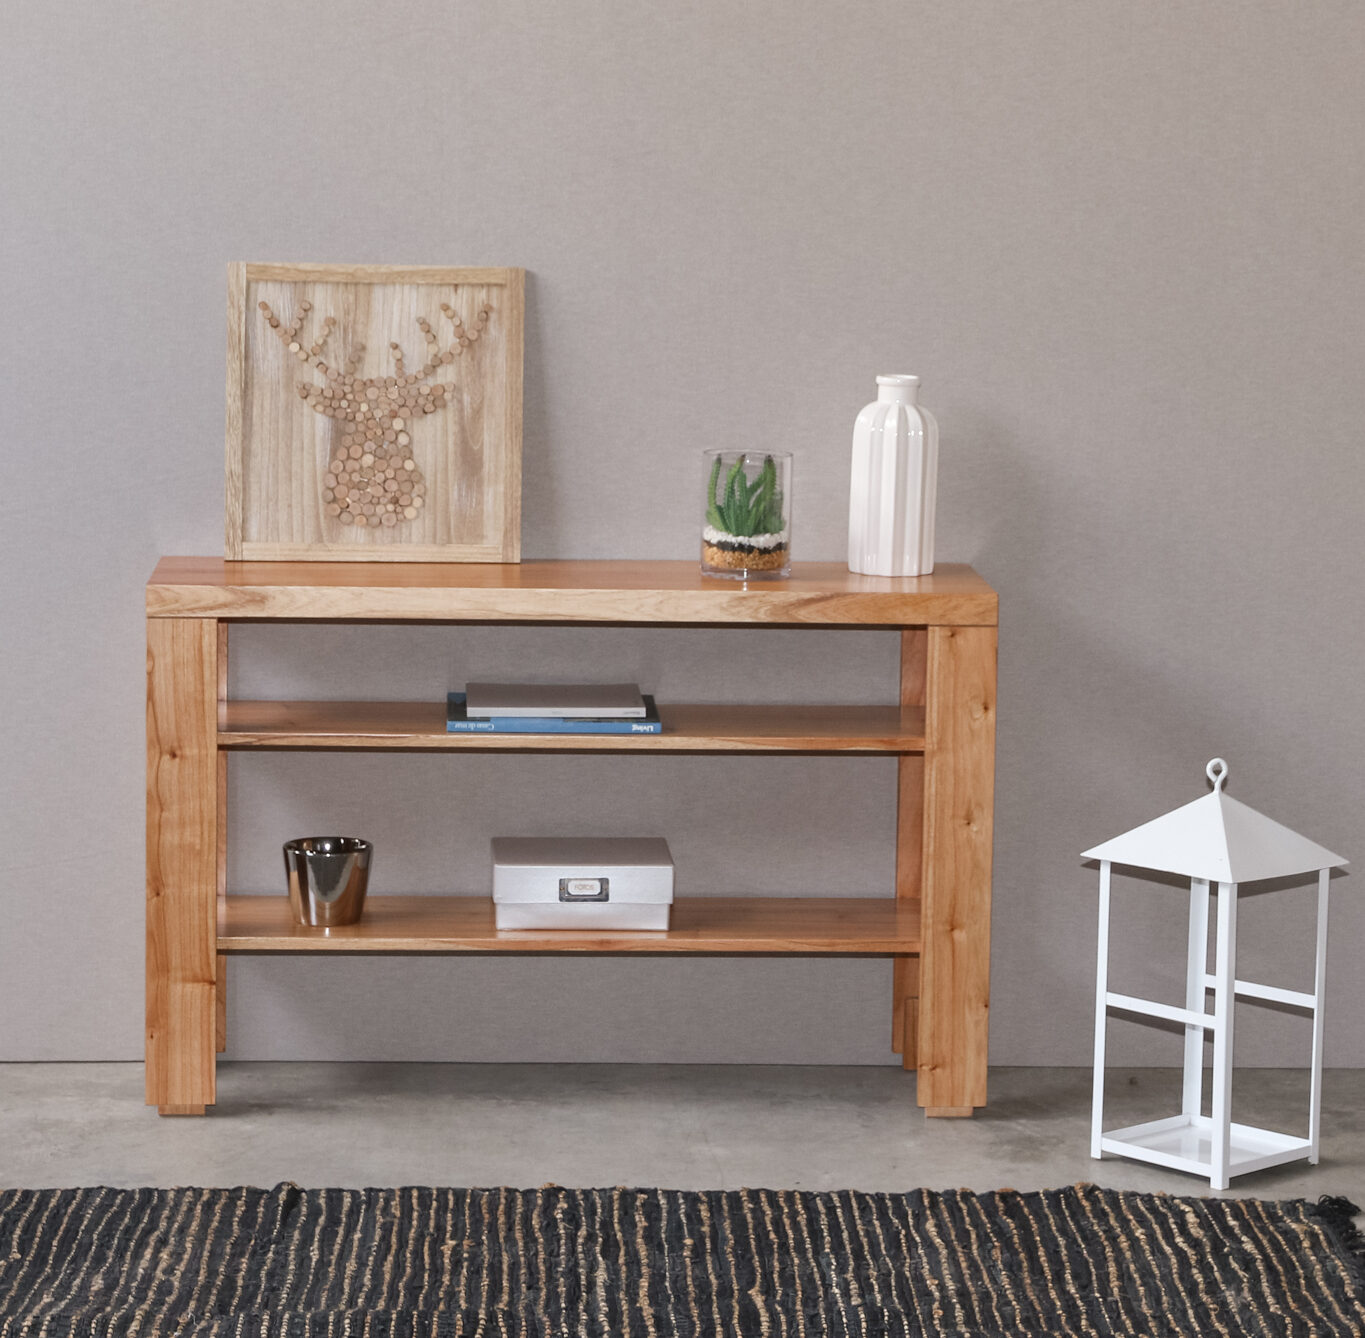 Mueble de TV de madera con vetas -Palisandro Interiorismo